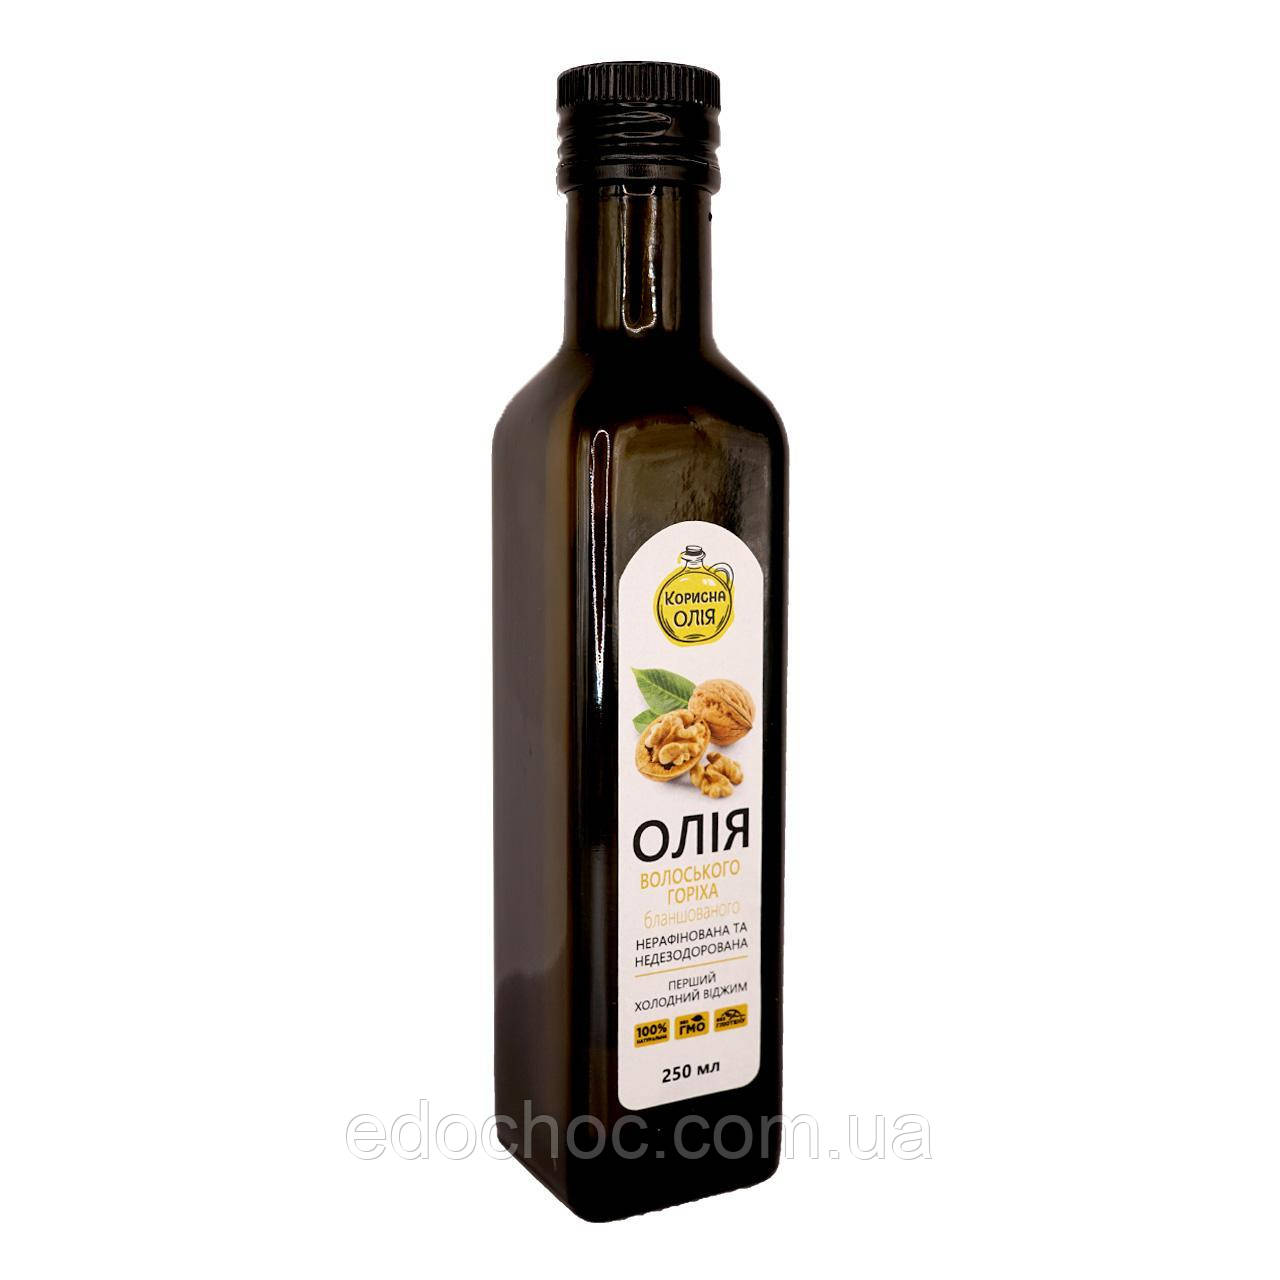 Олія з Бланшованого грецького горіха першого холодного віджиму, ТМ "Корисна олія" 250 мл